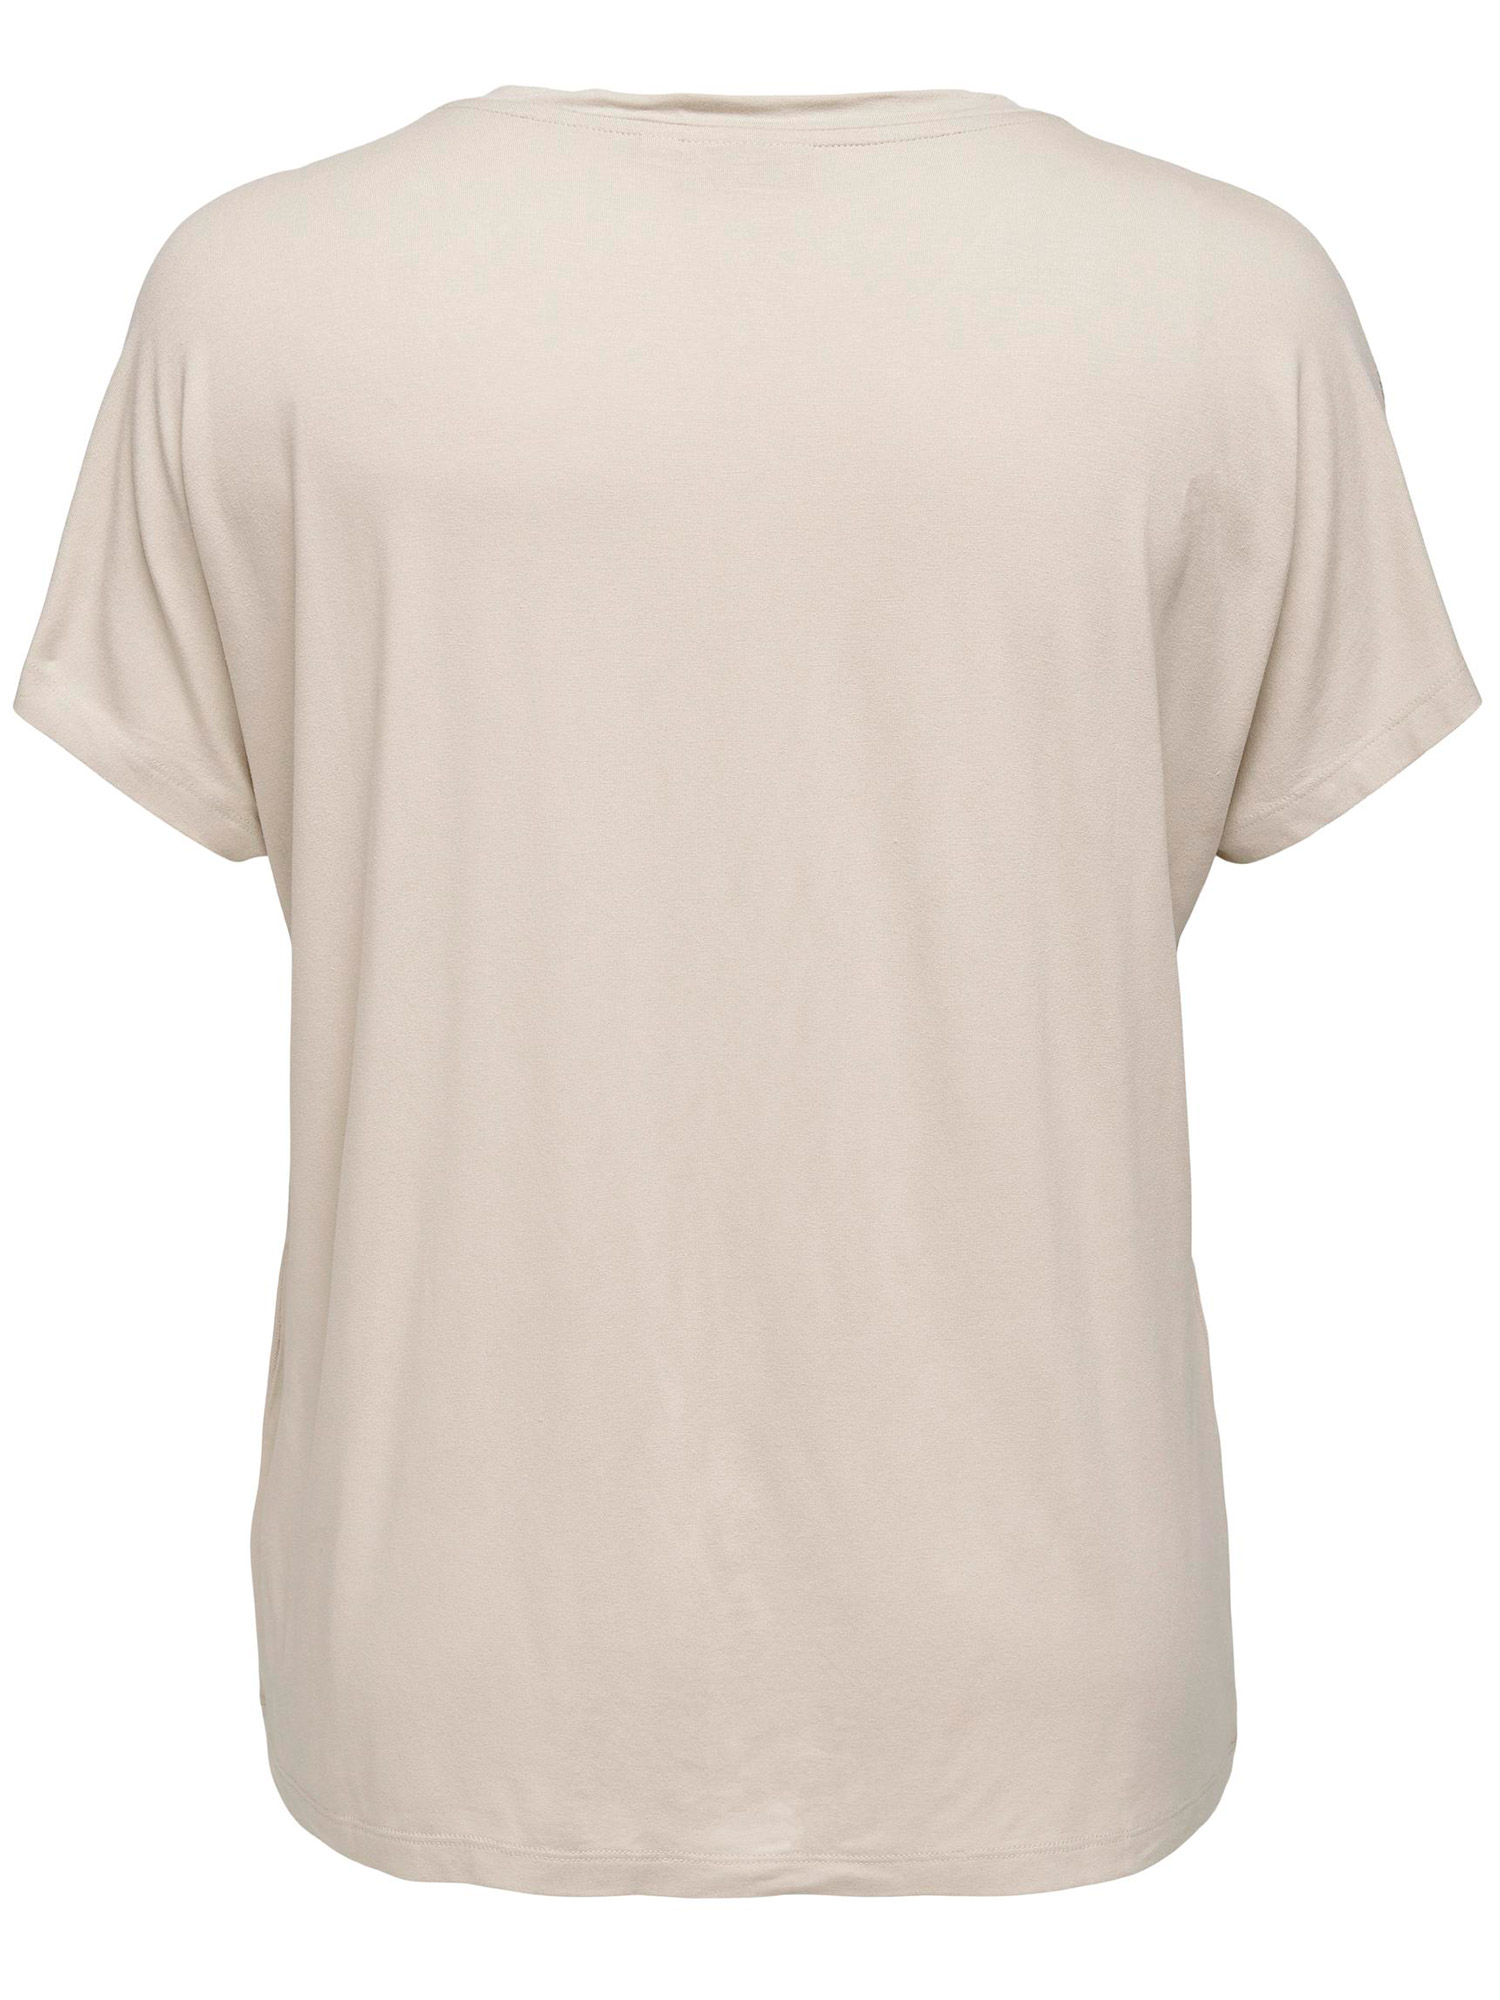 Car LOUISA - Flott beige t-skjorte med paljetter fra Only Carmakoma